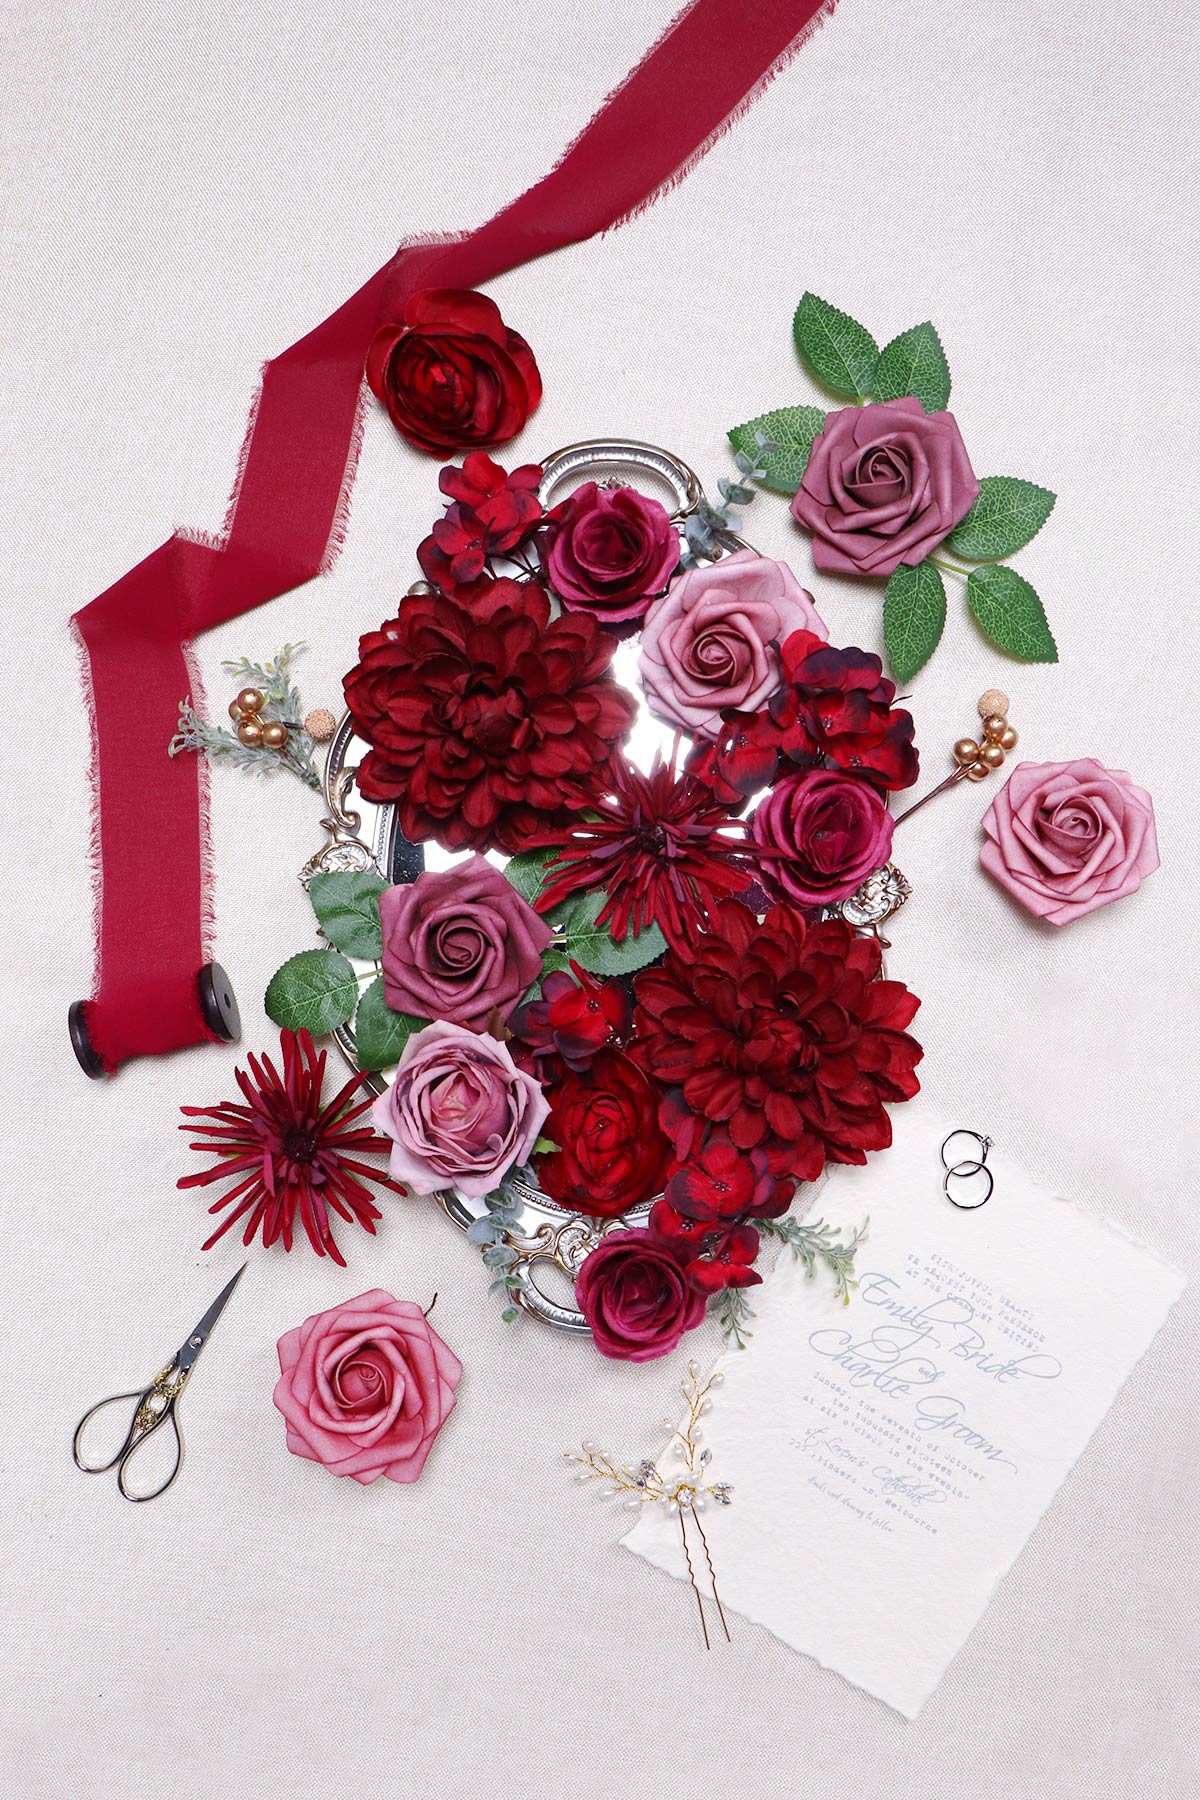 Artificial Flowers - Wedding Flower Box Set - DIY Bridal Bouquet, Centerpieces, Aisle Flower Decor - Burgundy & Mauve